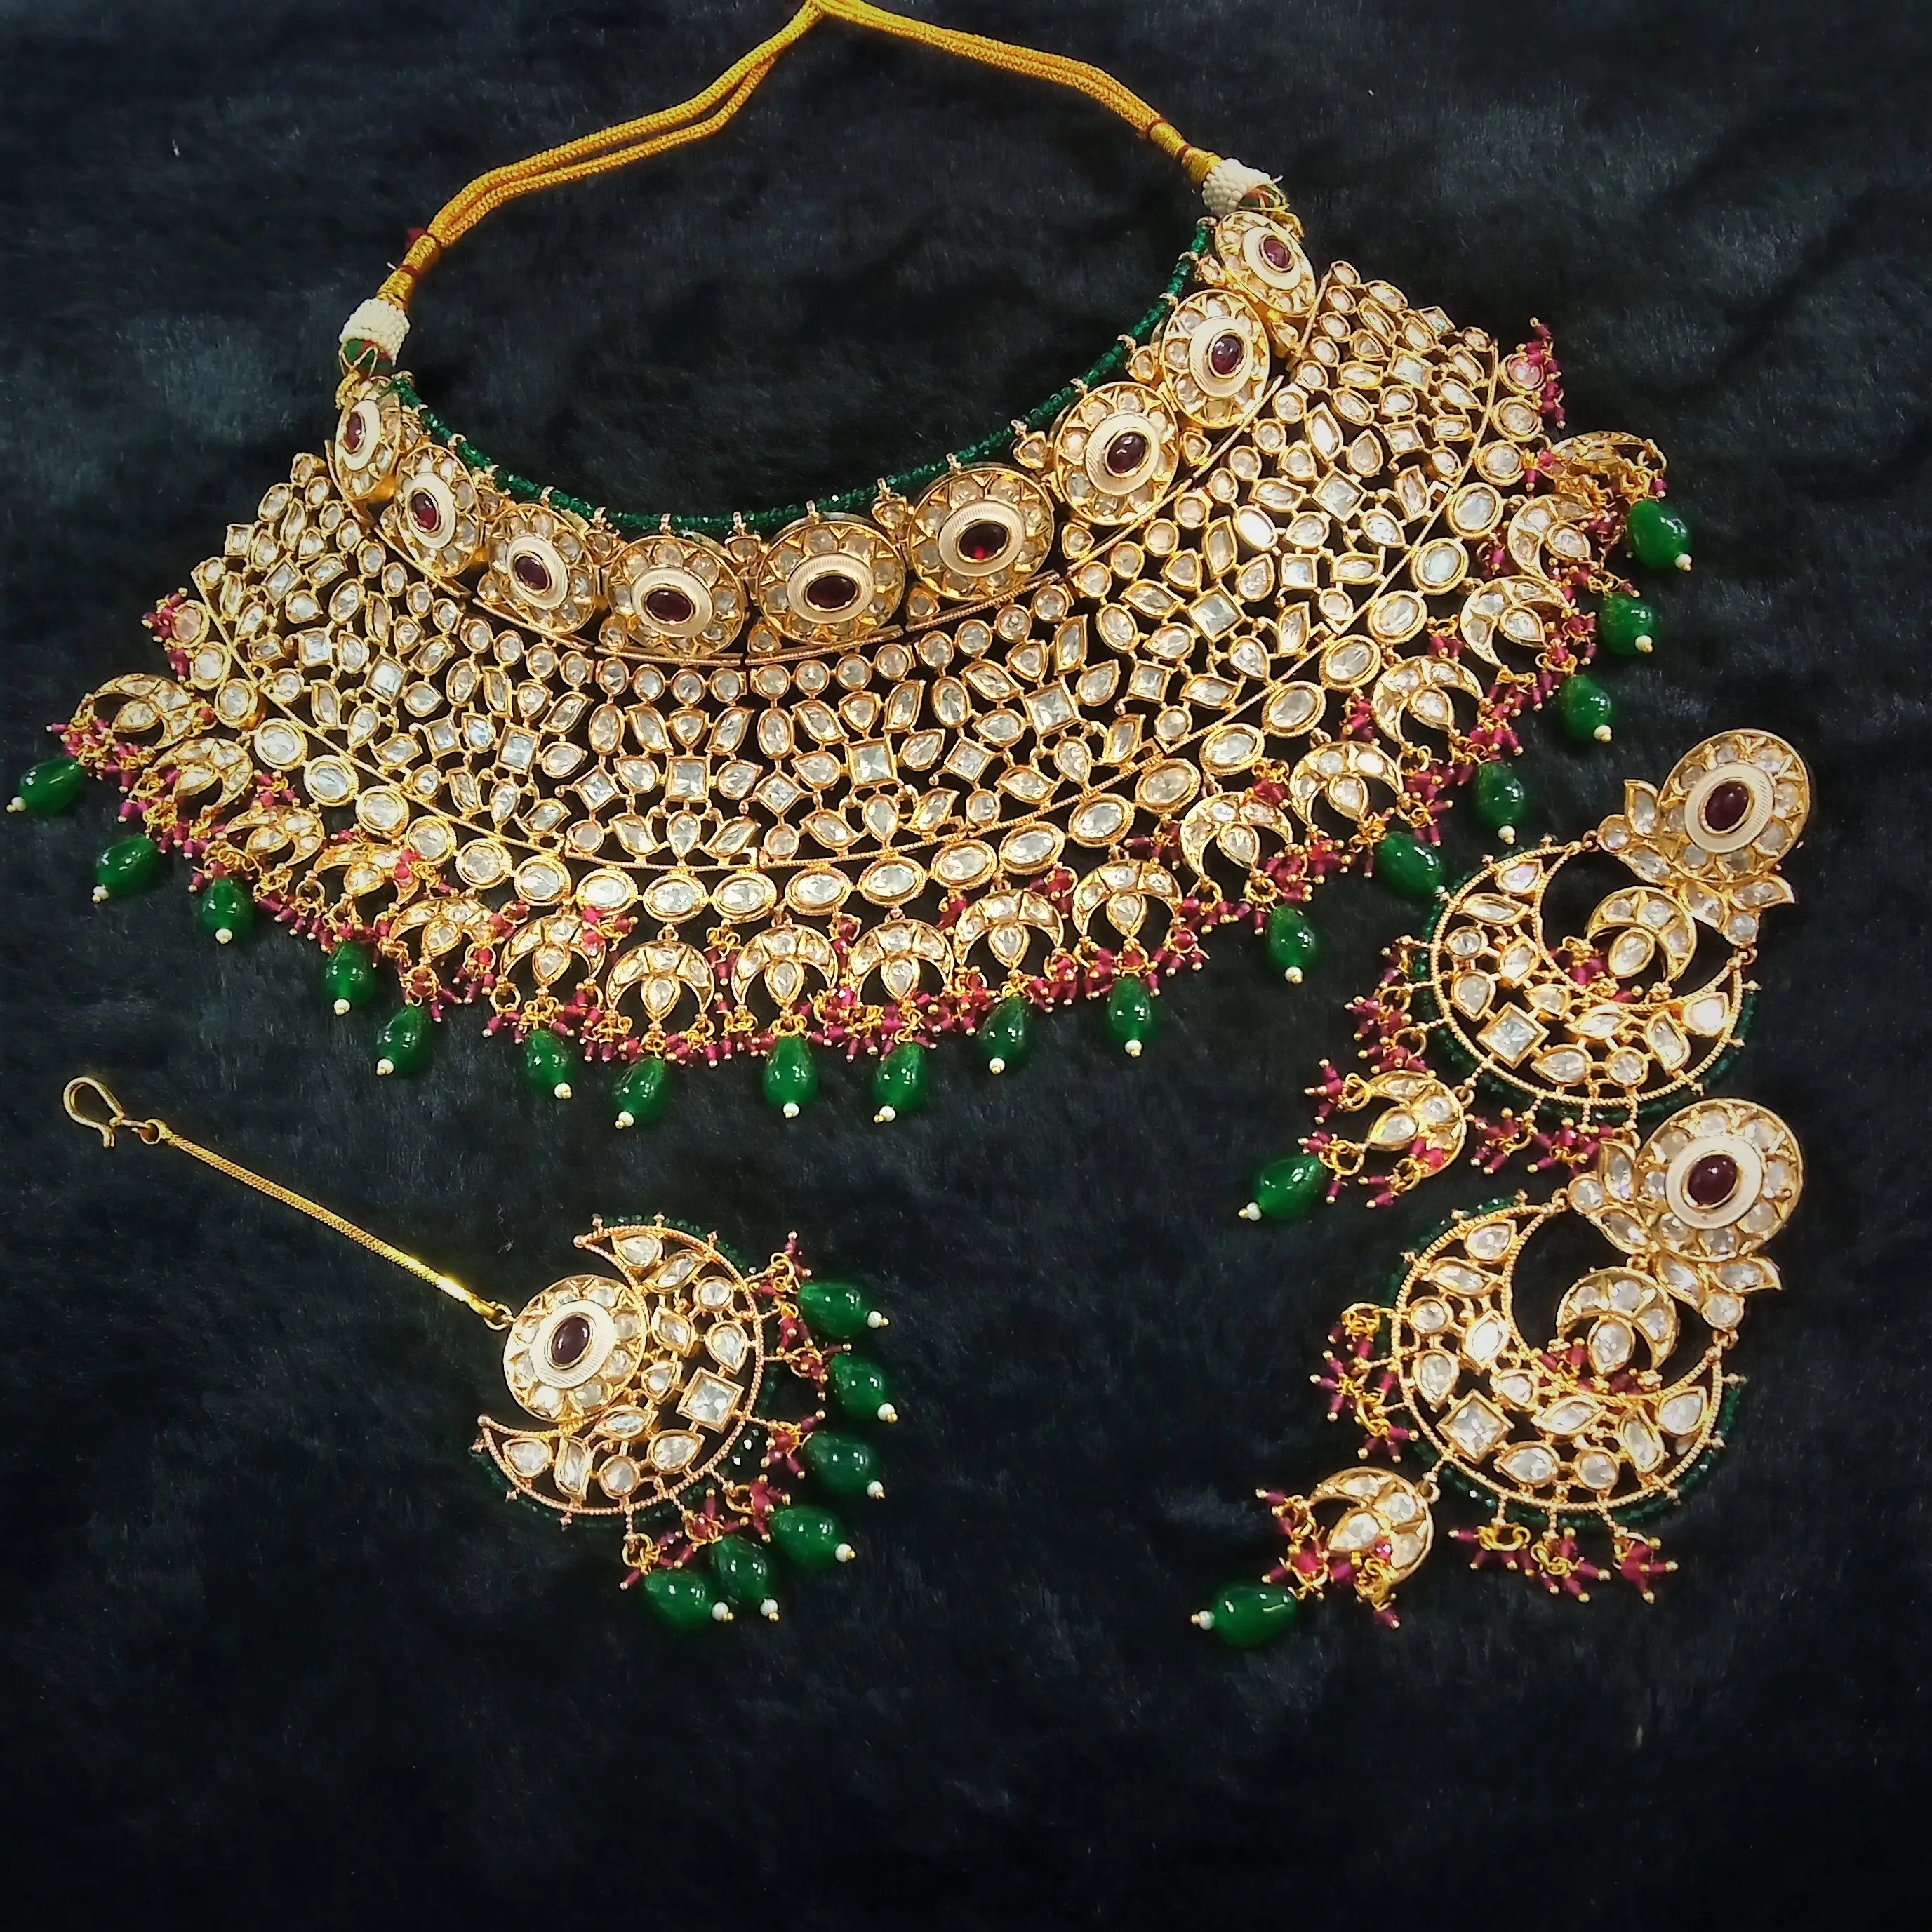 伝統的なインドの白とピンクのカンダンアメリカンダイヤモンドと真珠のヘッドジュエリーデザインの結婚式